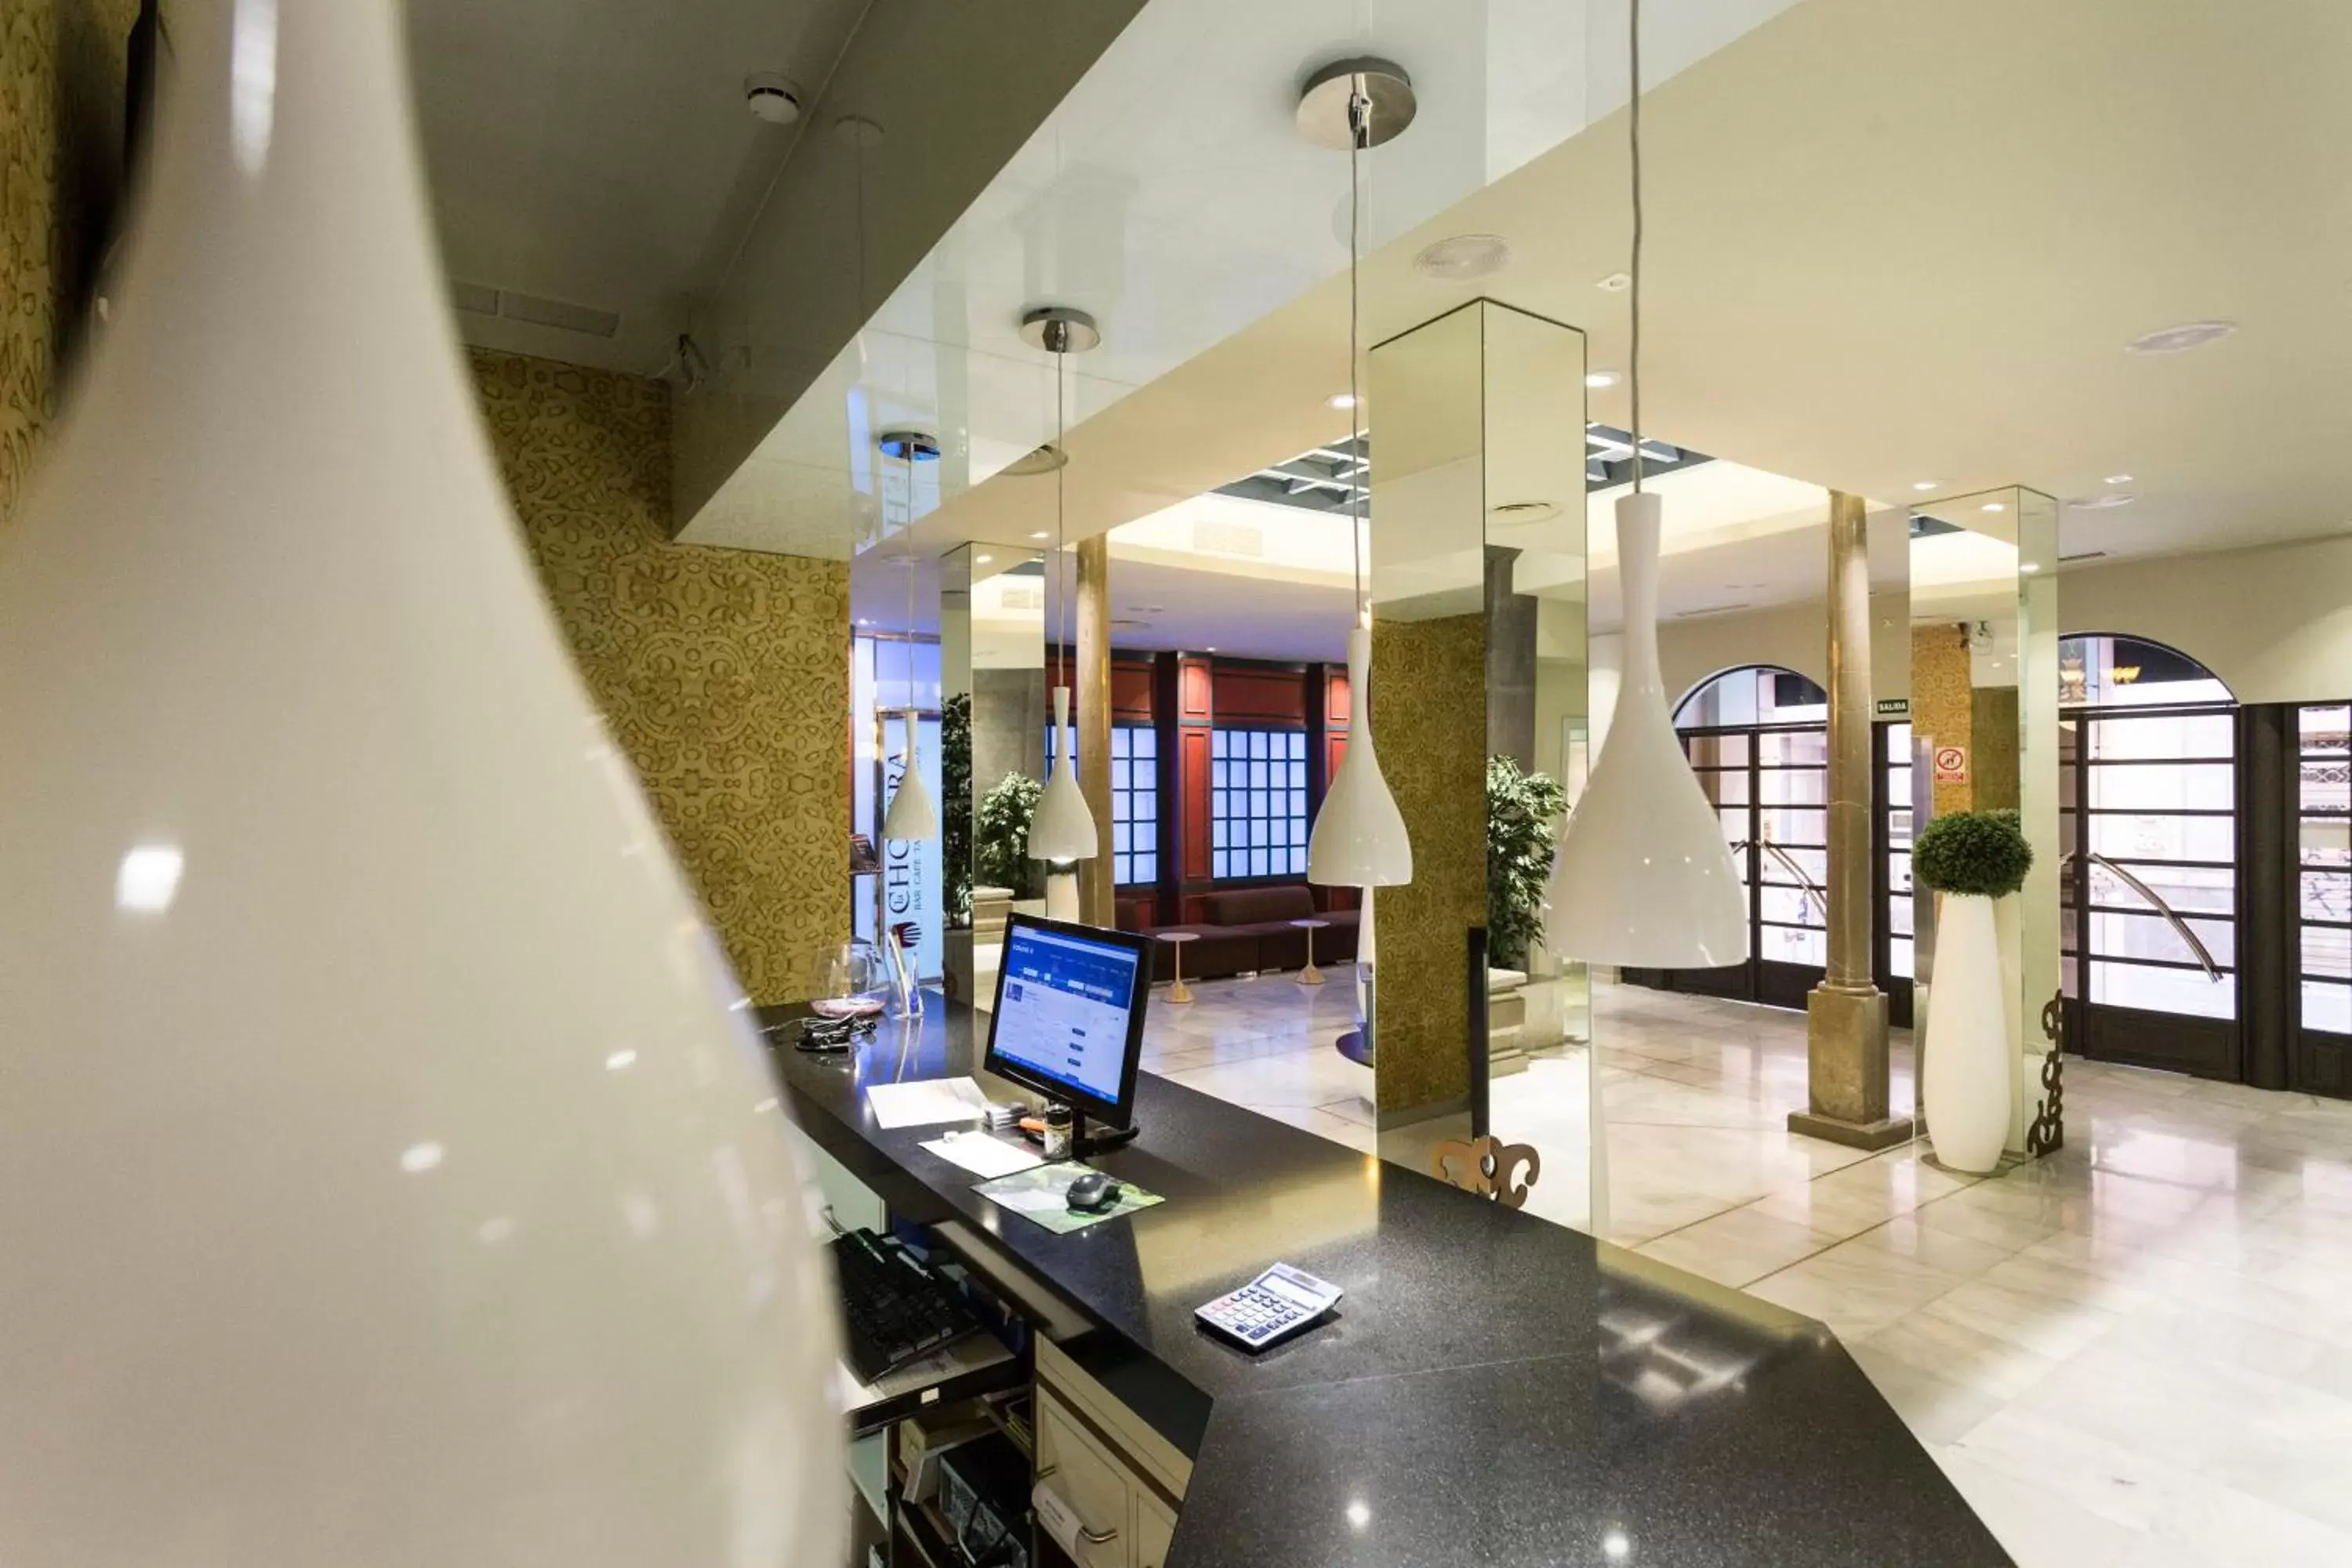 Lobby or reception, Lobby/Reception in Hotel Comfort Dauro 2